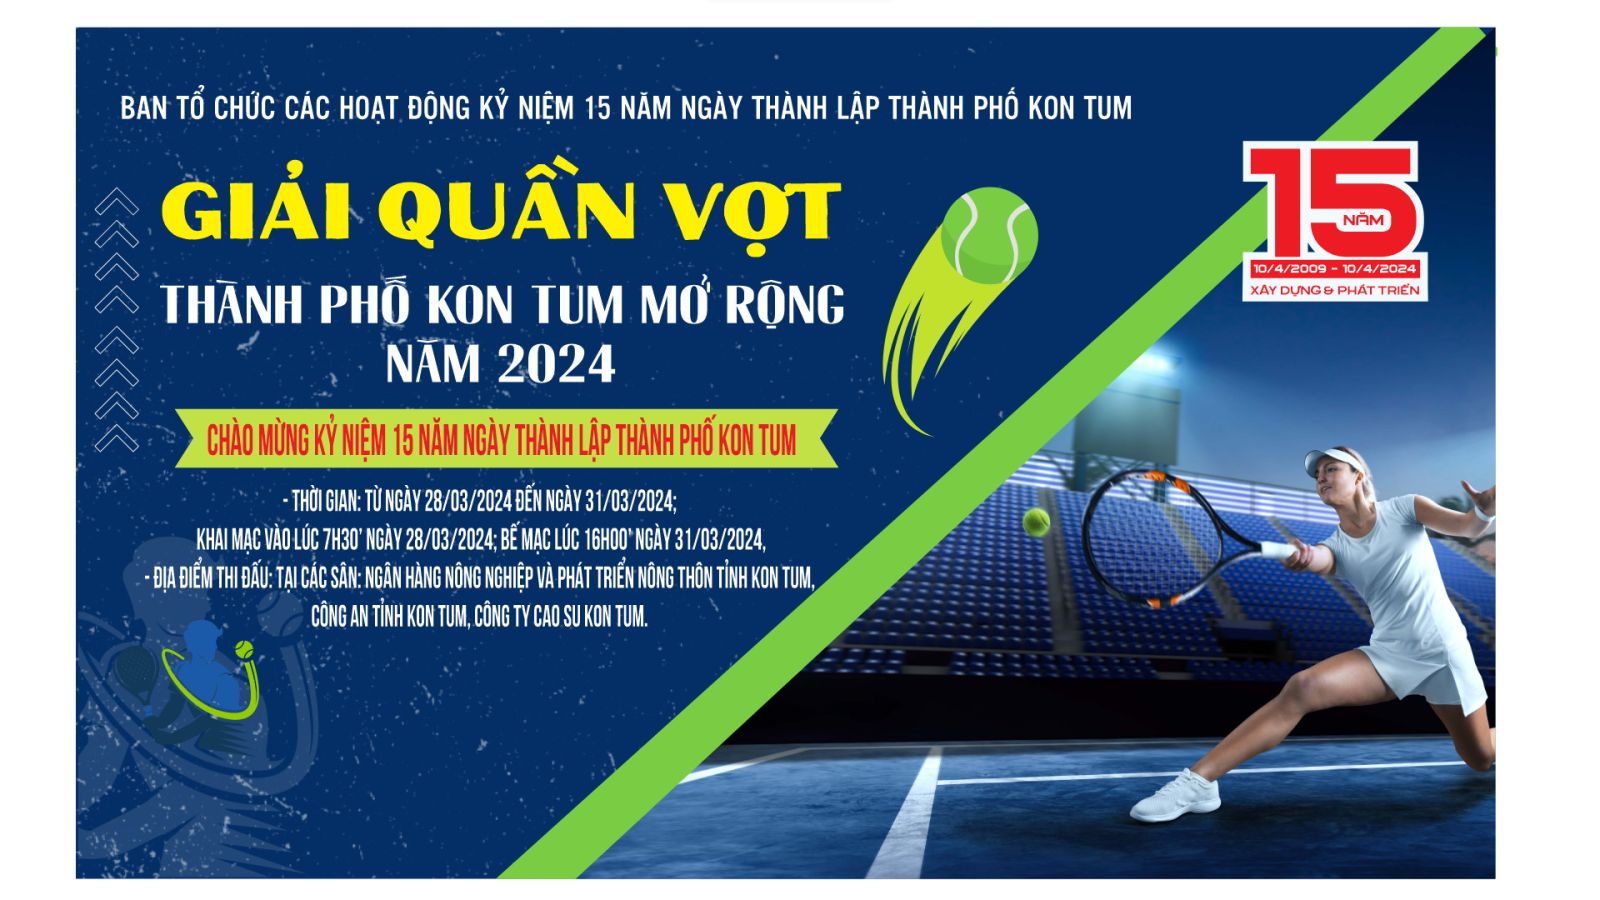 Thời gian tổ chức Giải Quần vợt, đua thuyền độc mộc, Cầu lông chào mừng 15 năm thành lập thành phố Kon Tum